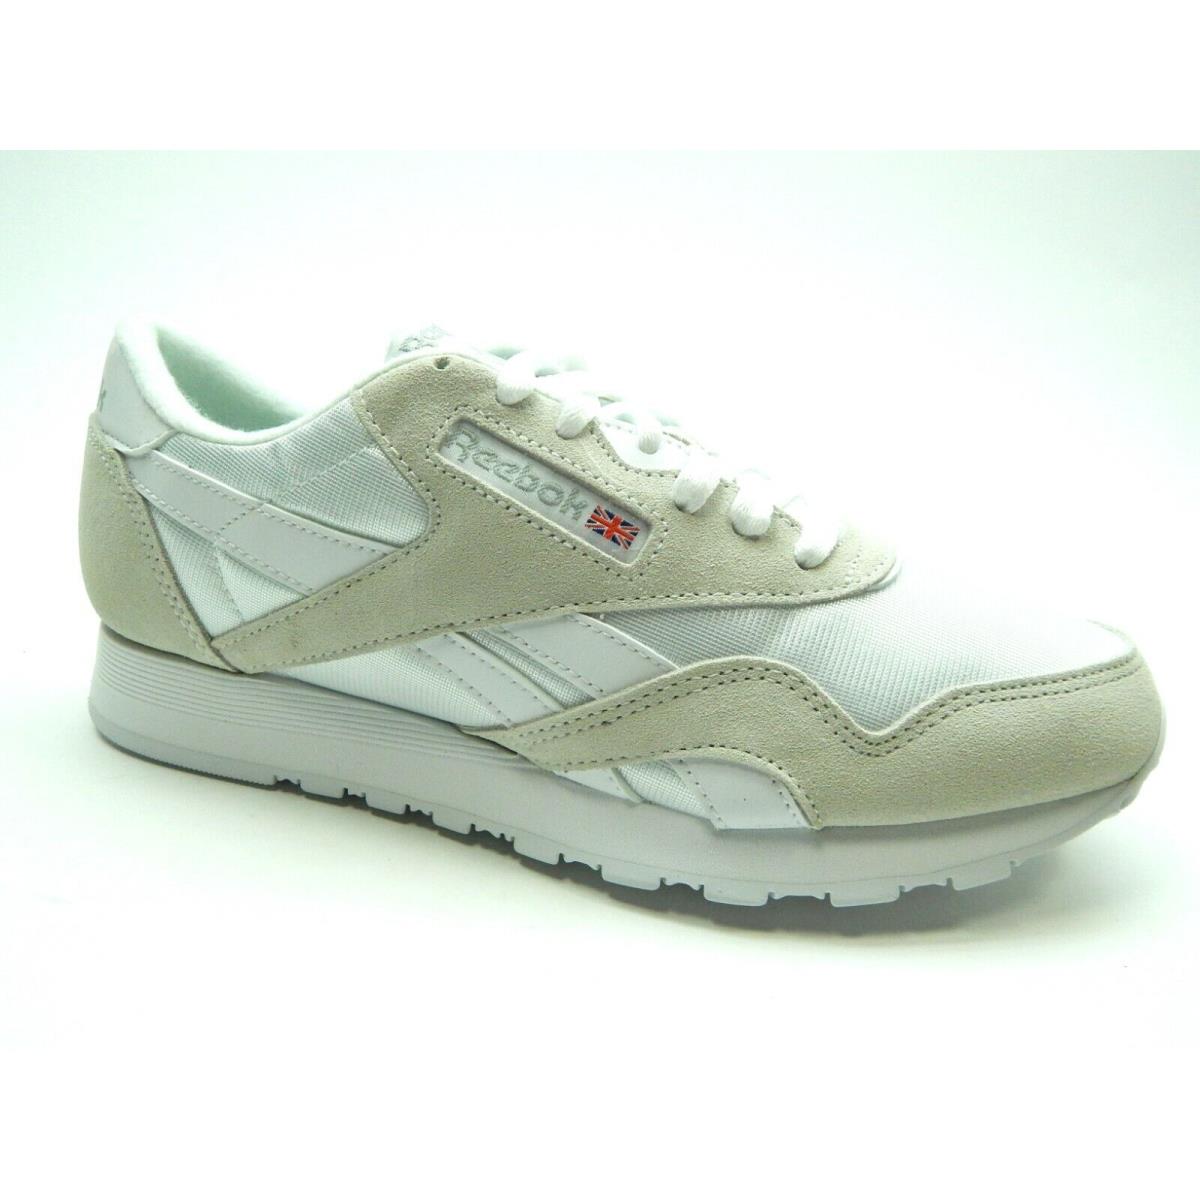 Reebok CL Nylon White Light Grey 6390 Men Shoes Size 3.5